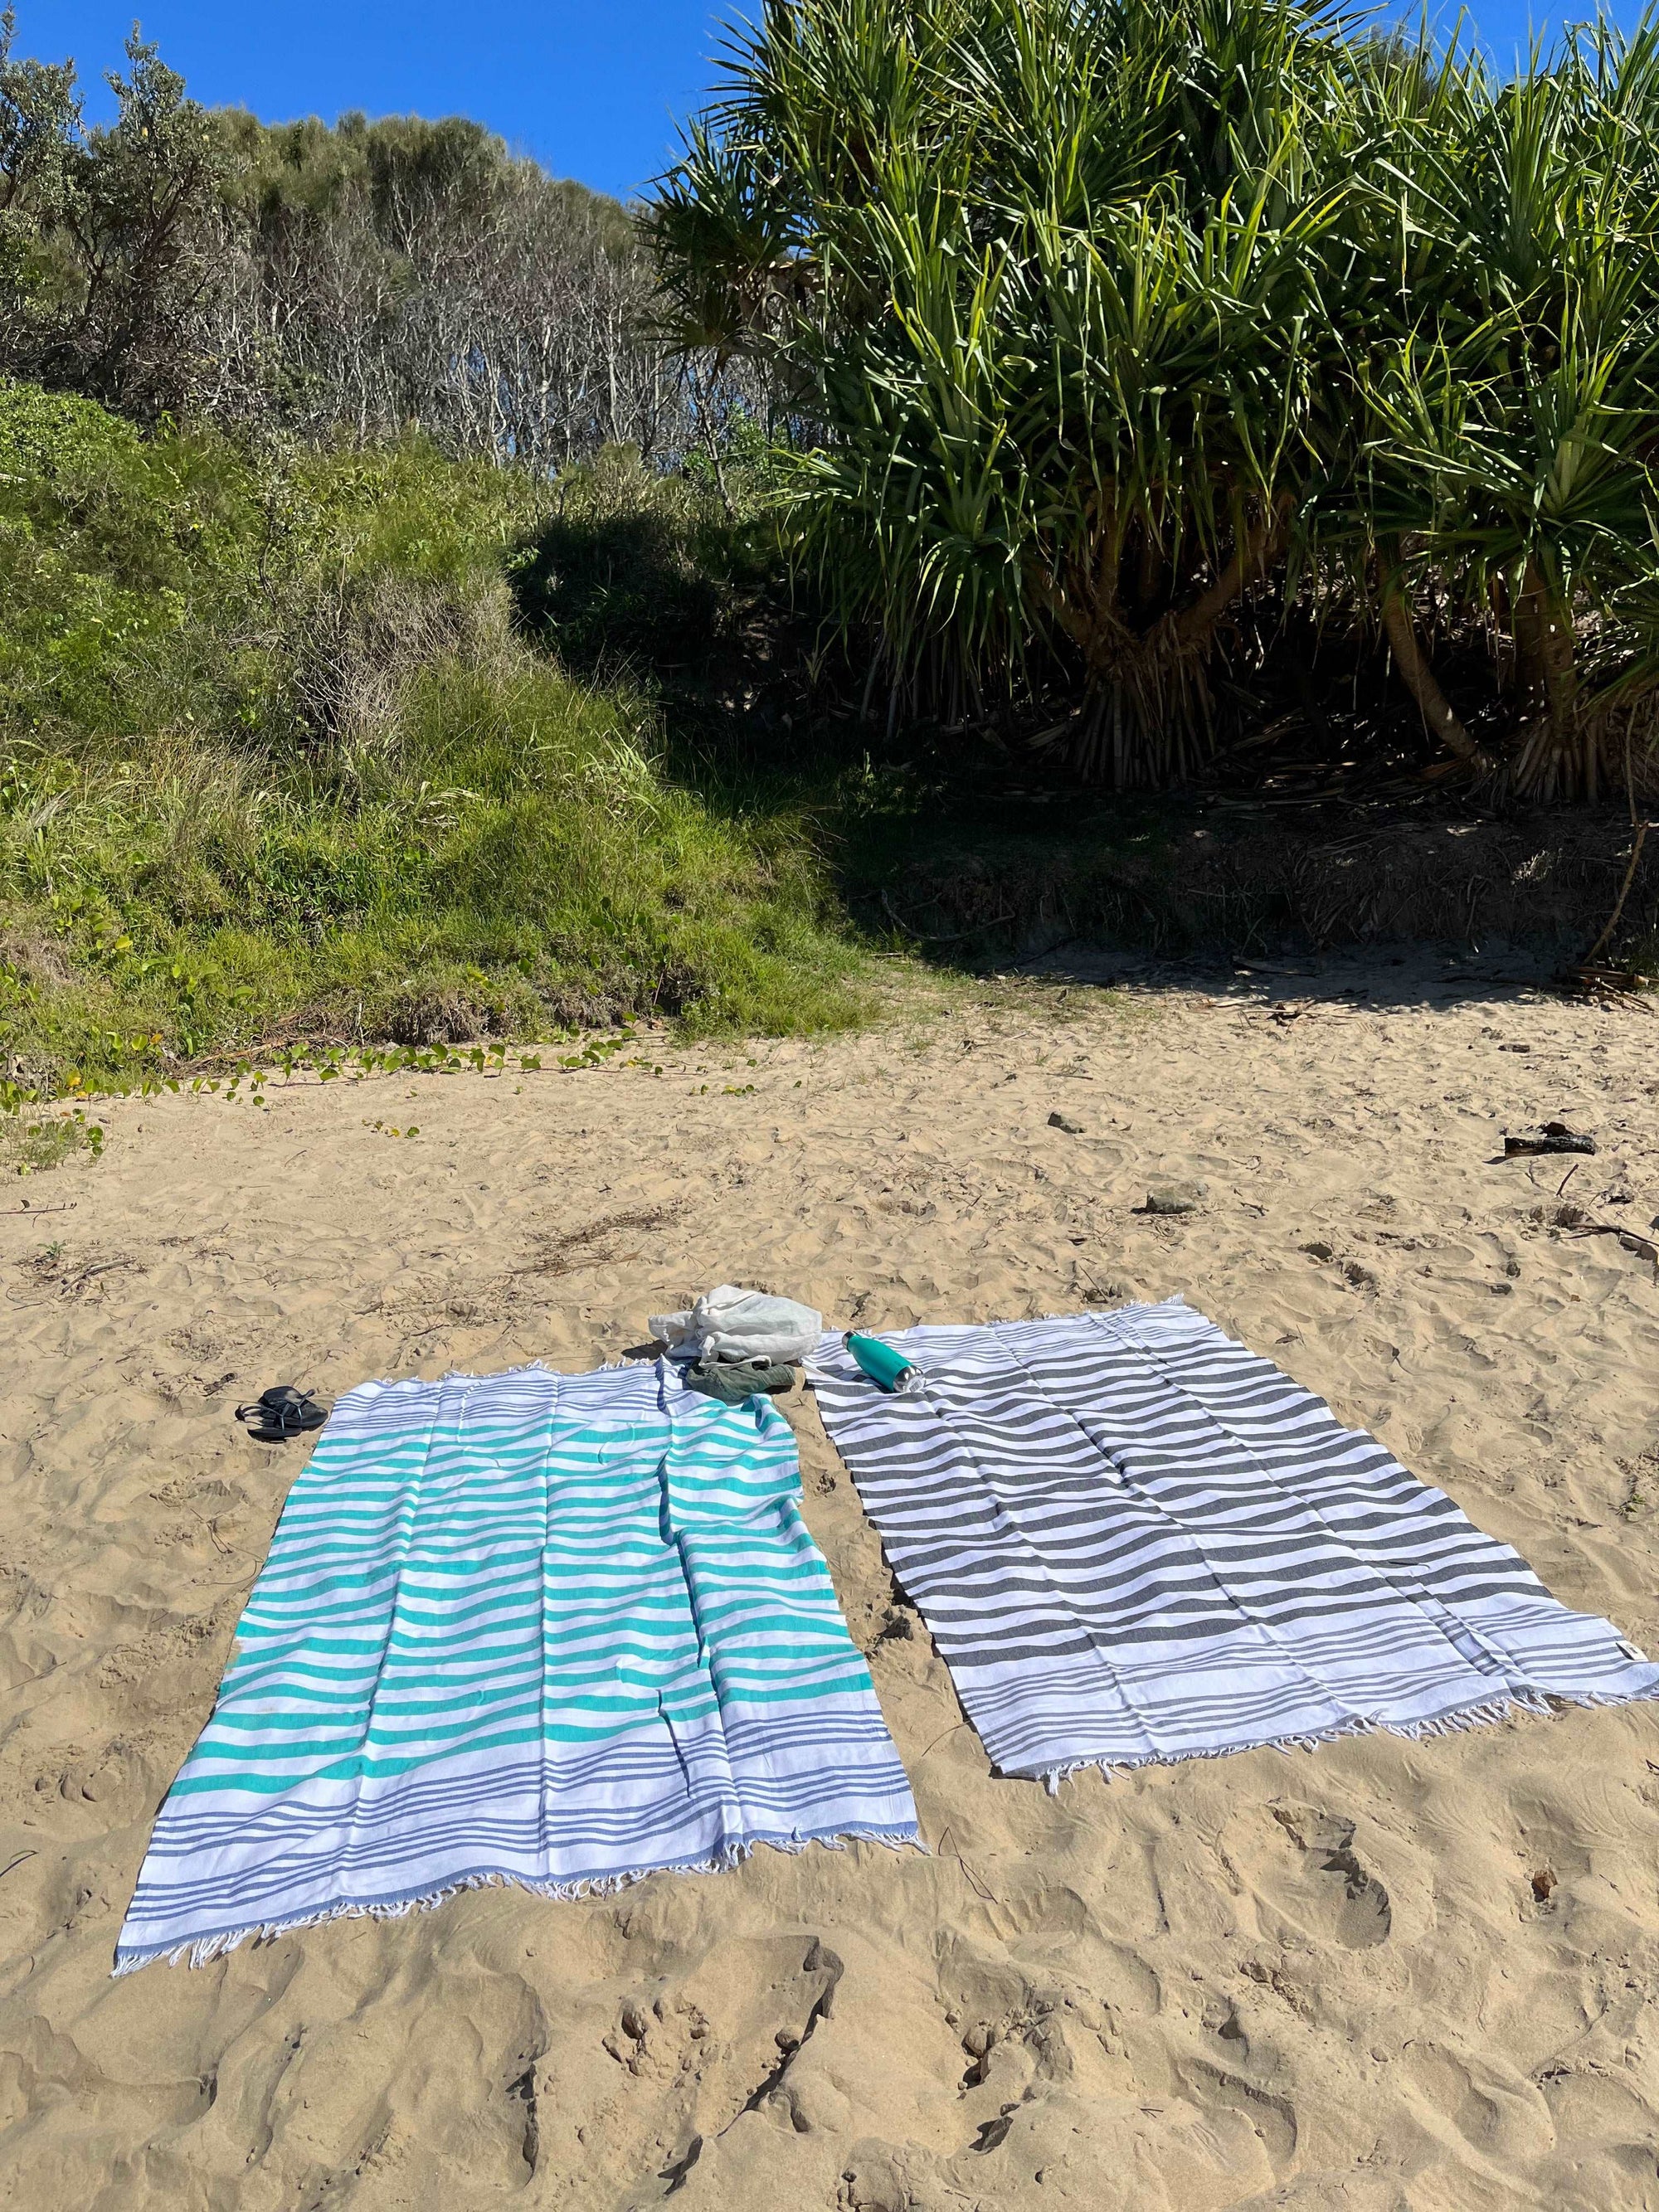 Coogee cotton beach towel, 290 gr - Pippah